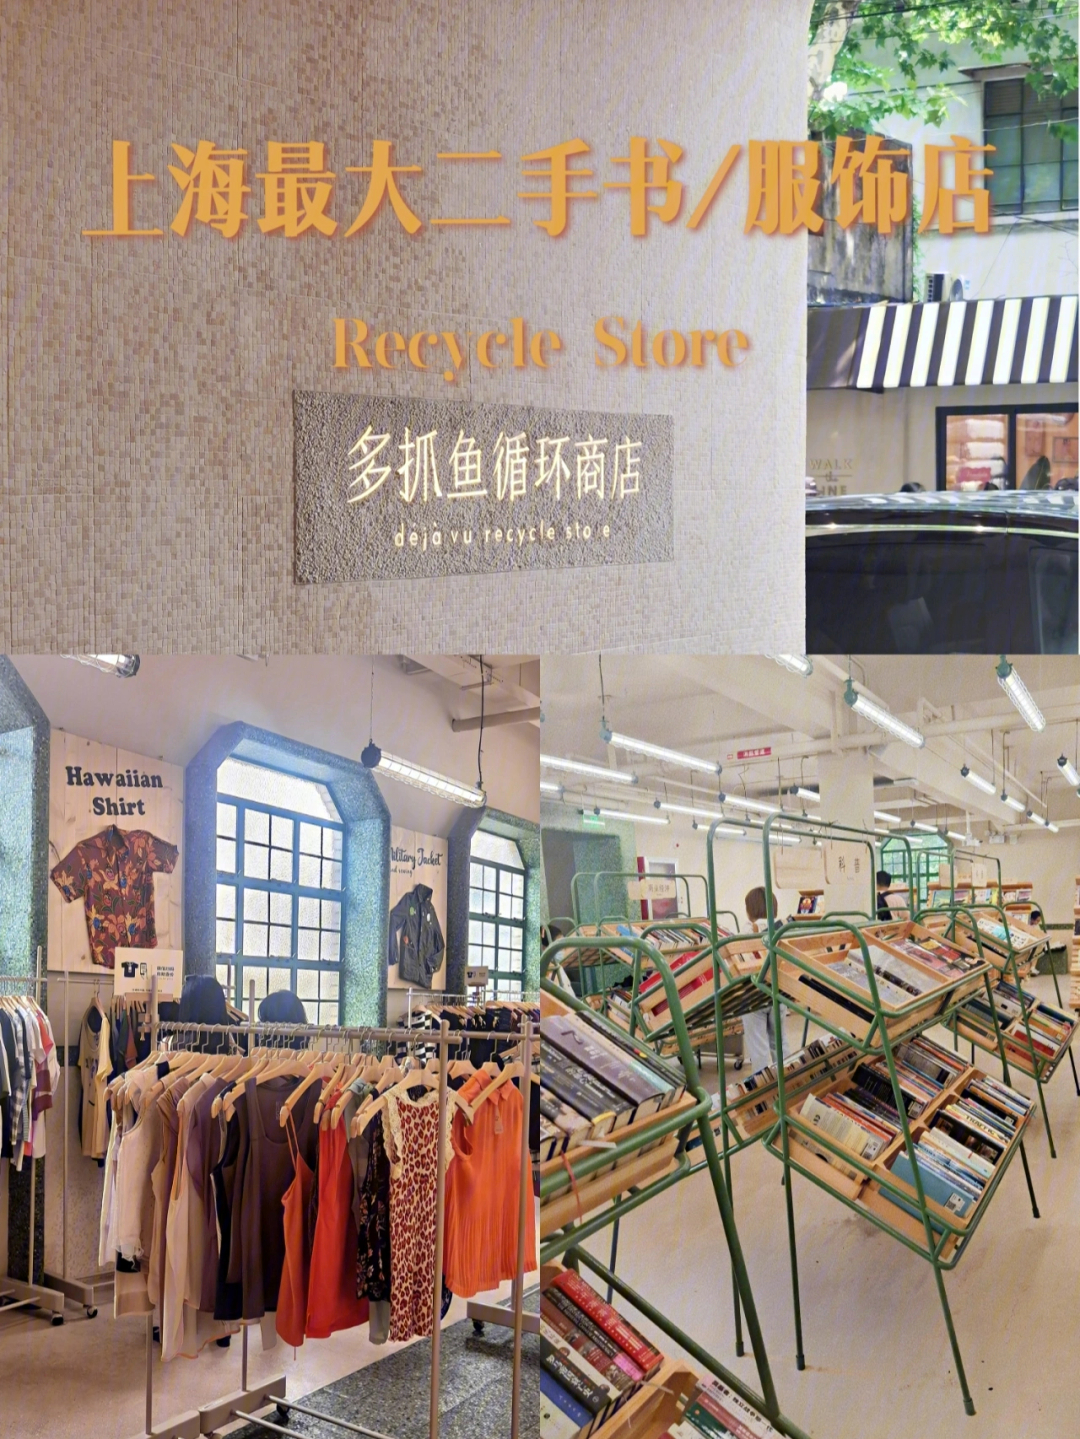 这次发现上海有实体店,而且增加了服饰!